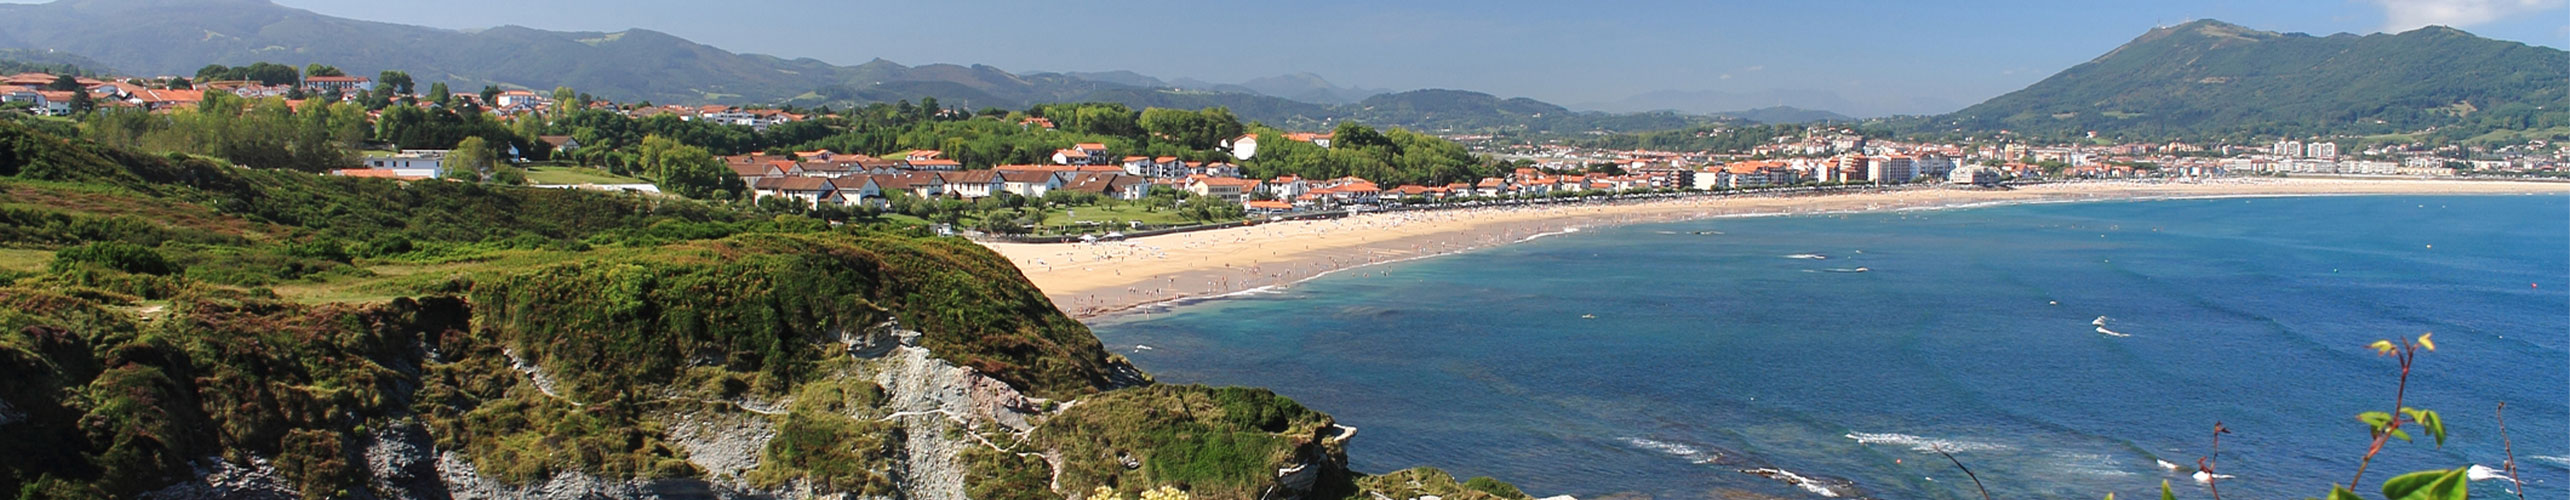 vue des côtes basques près d'hendaye